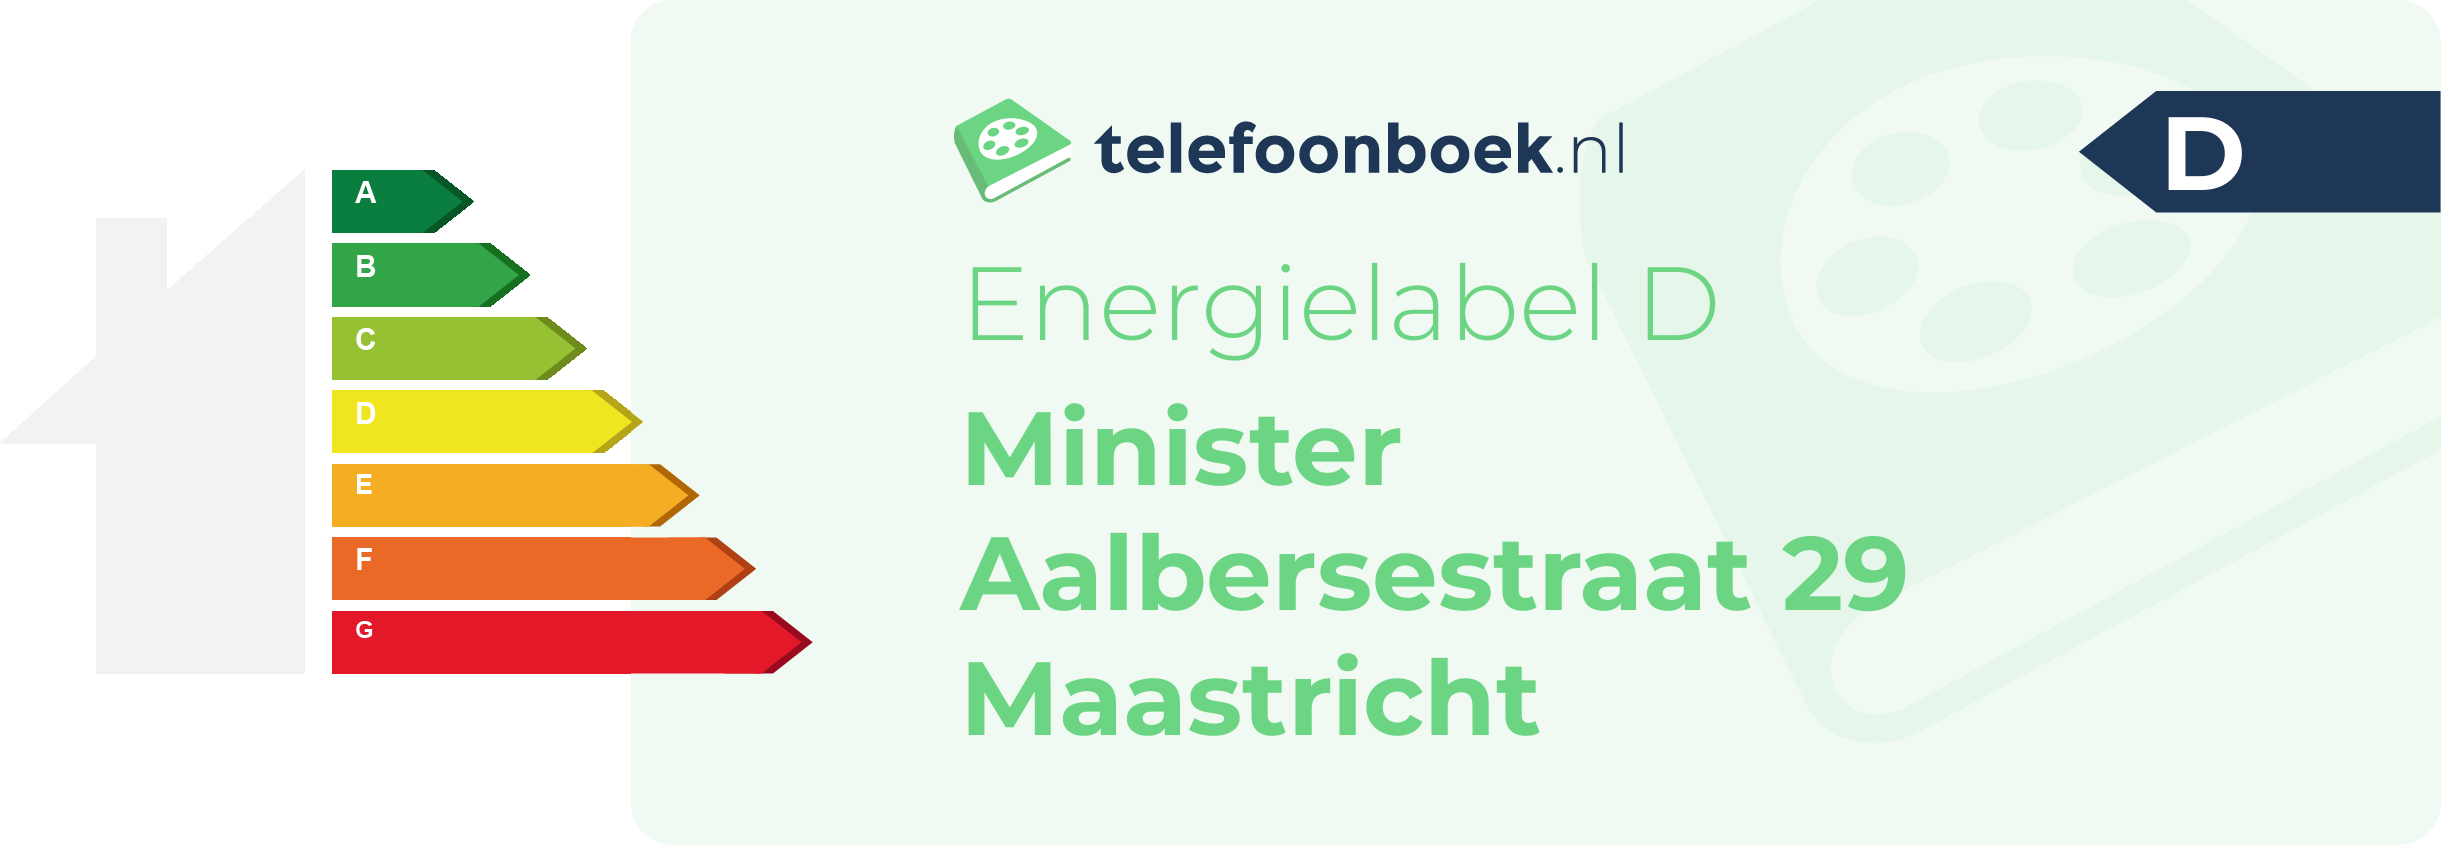 Energielabel Minister Aalbersestraat 29 Maastricht